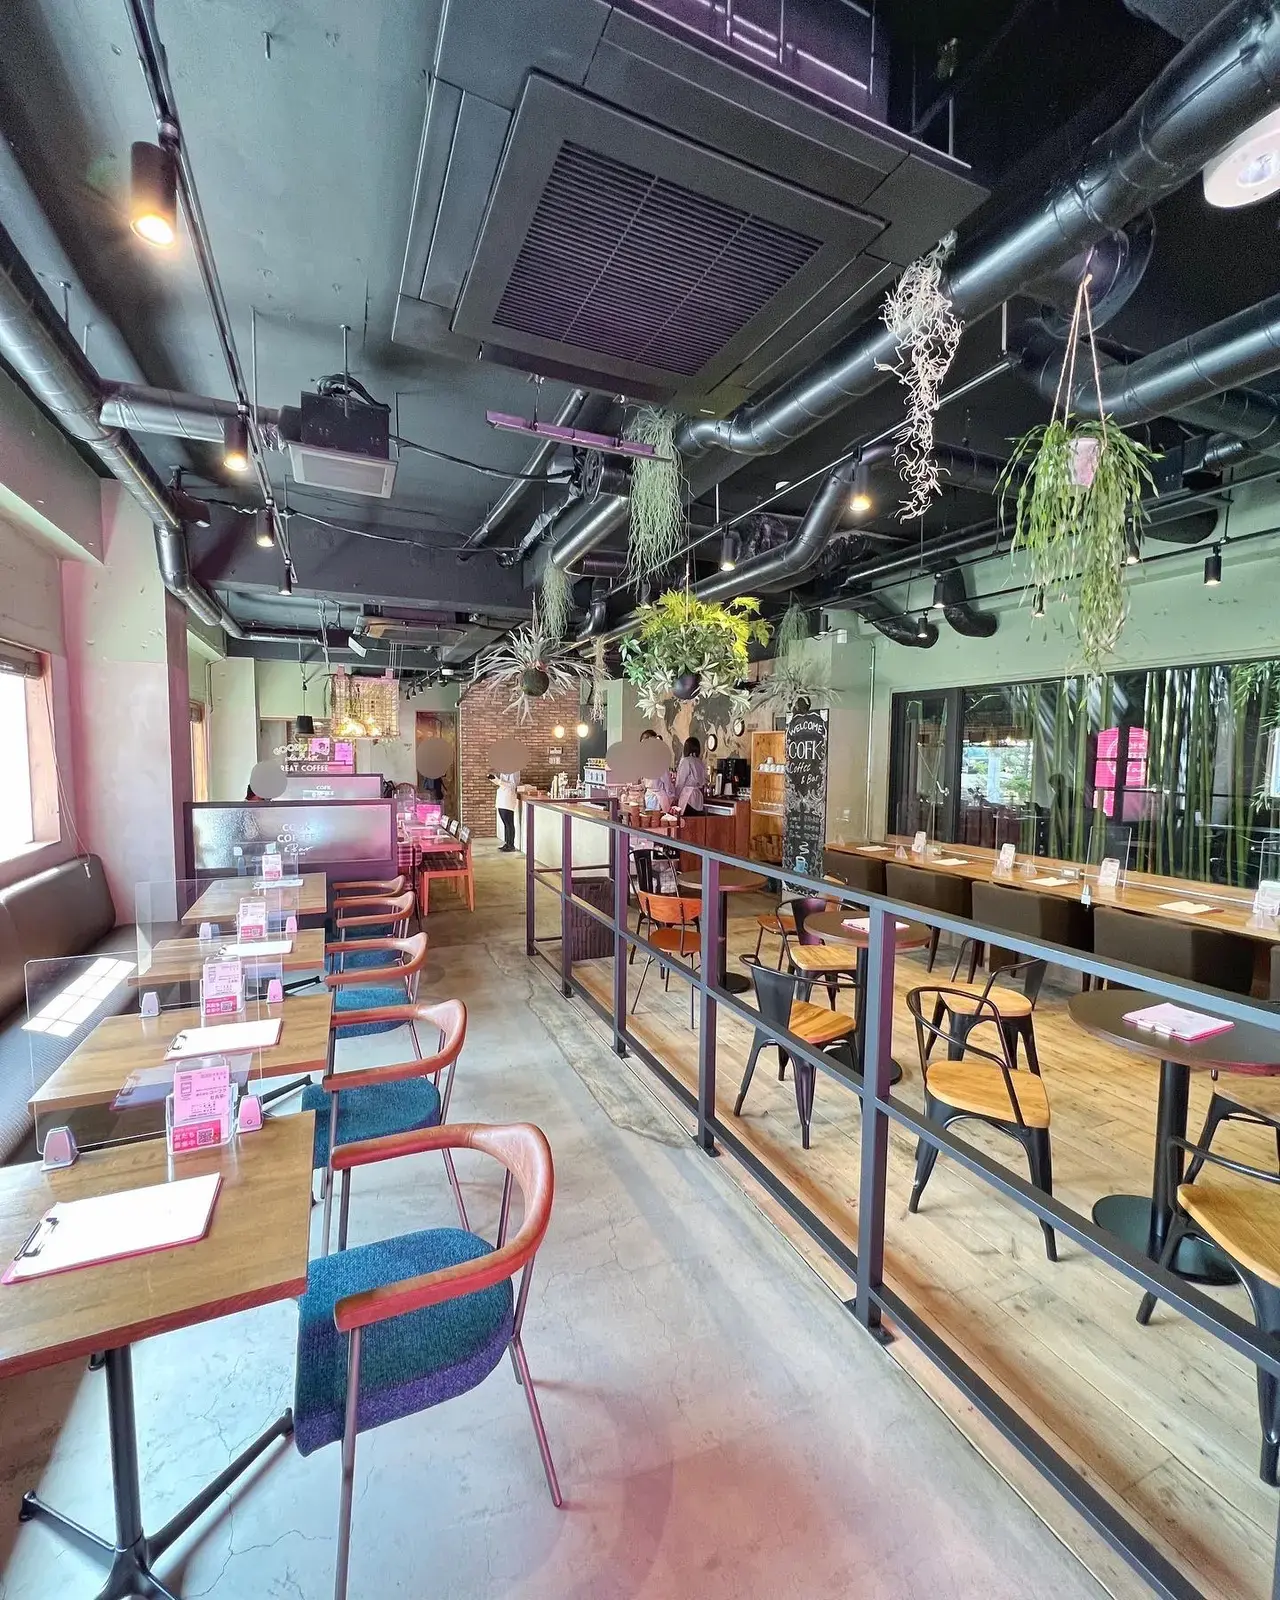 ニューオープン お洒落カフェでロコモコランチプレート 3種のパフェ 大宮 食べて埼玉が投稿したフォトブック Lemon8